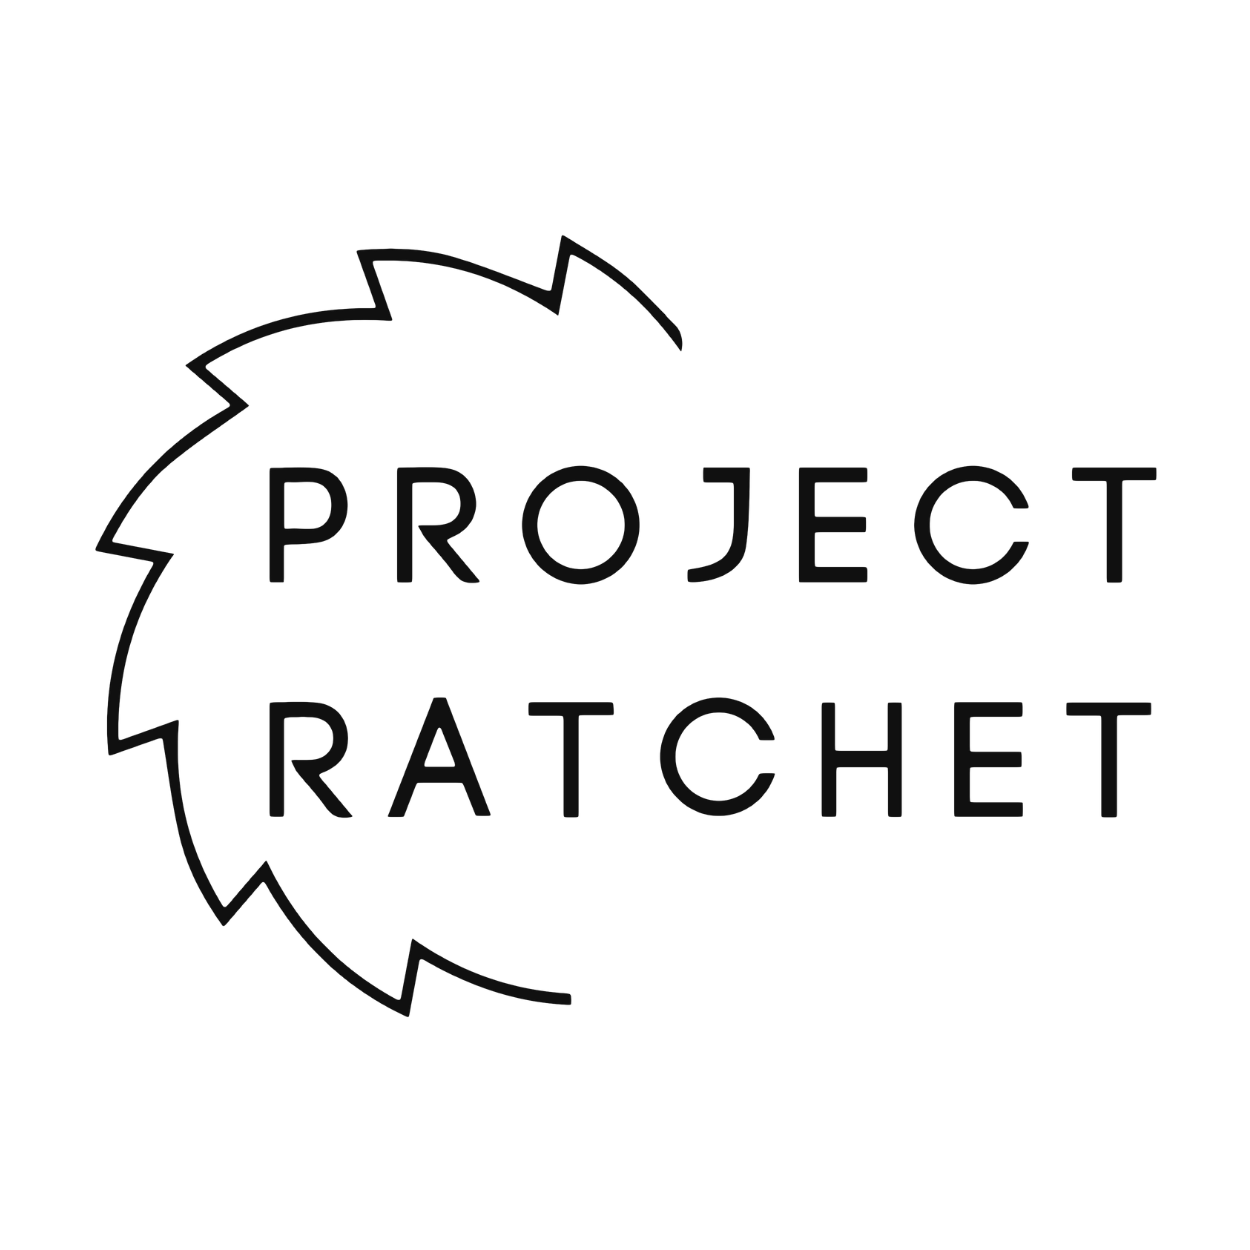 Project Ratchet